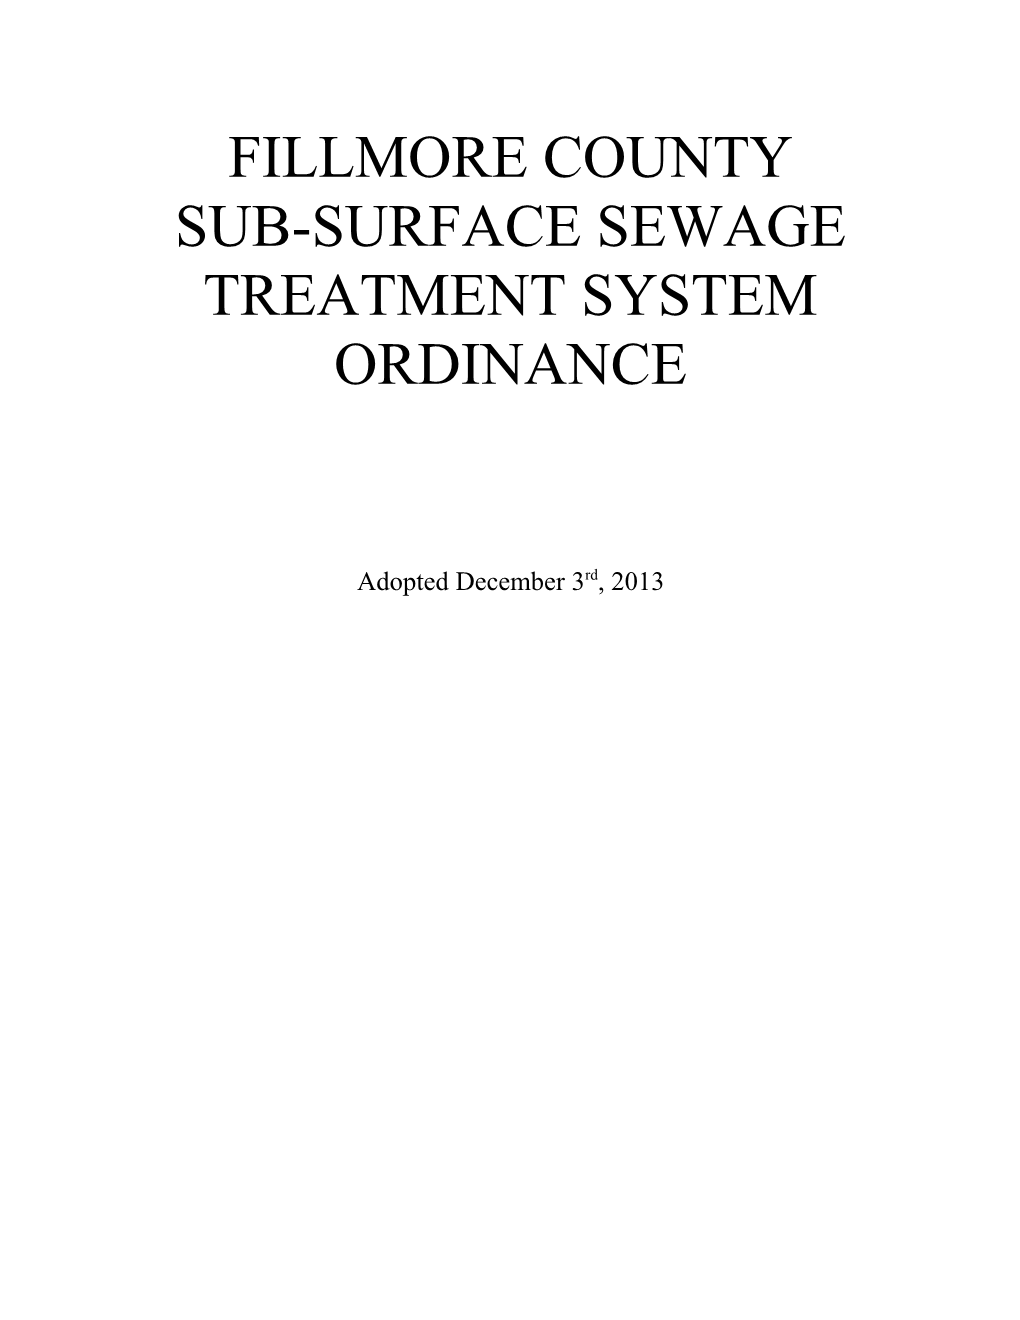 Sub-Surface Sewage Treatment System